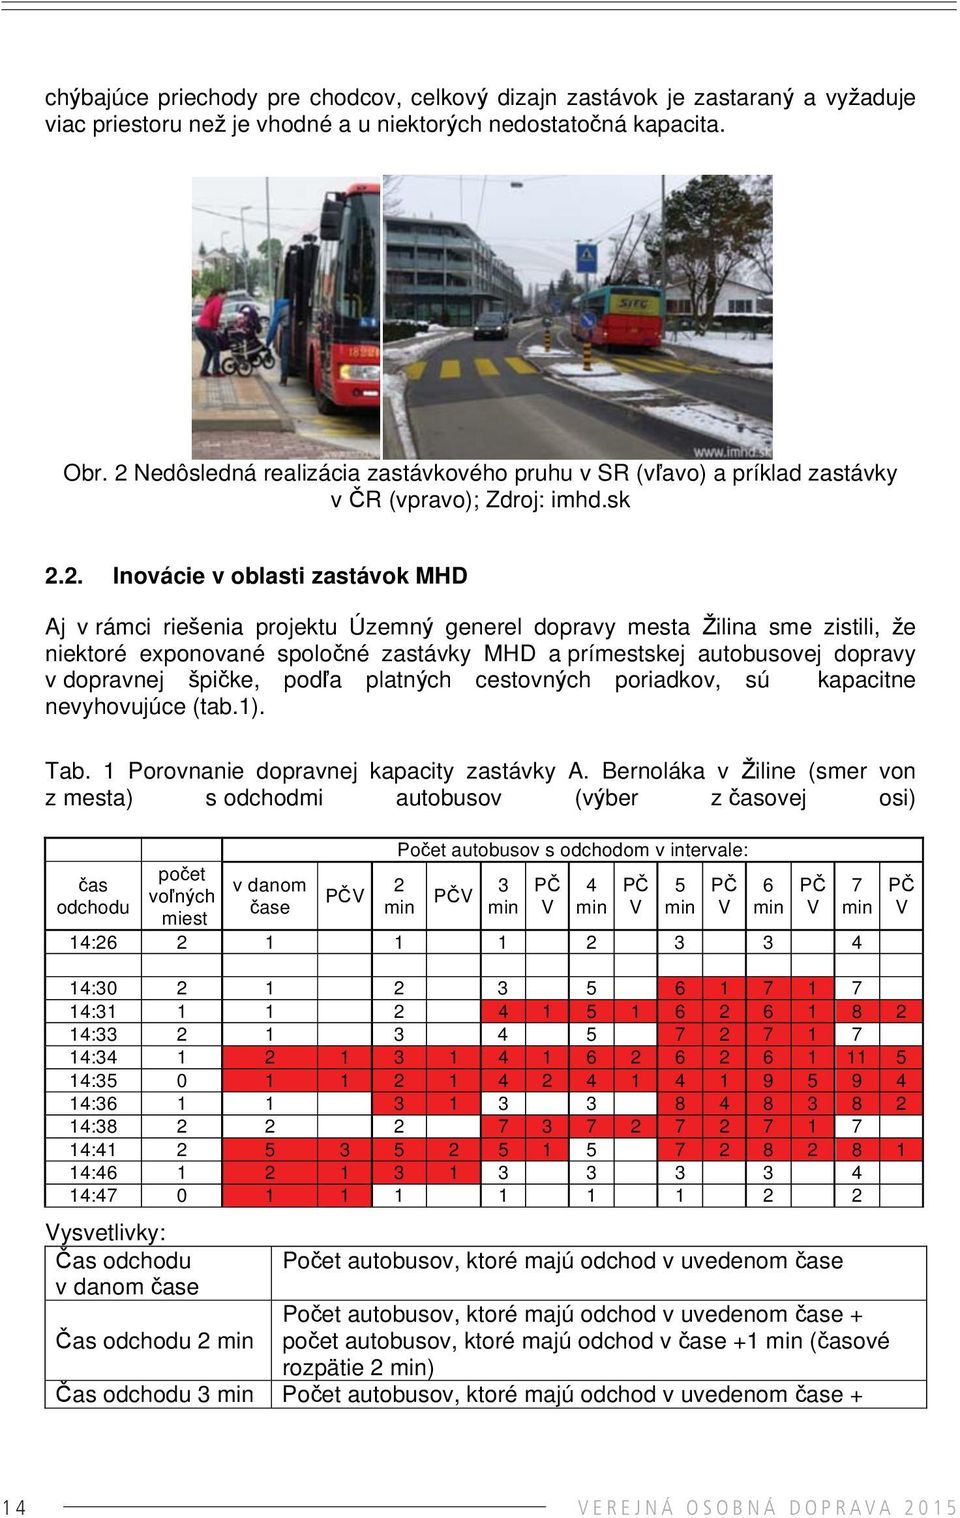 Žilina sme zistili, že niektoré exponované spoločné zastávky MHD a prímestskej autobusovej dopravy v dopravnej špičke, podľa platných cestovných poriadkov, sú kapacitne nevyhovujúce (tab.1). Tab.